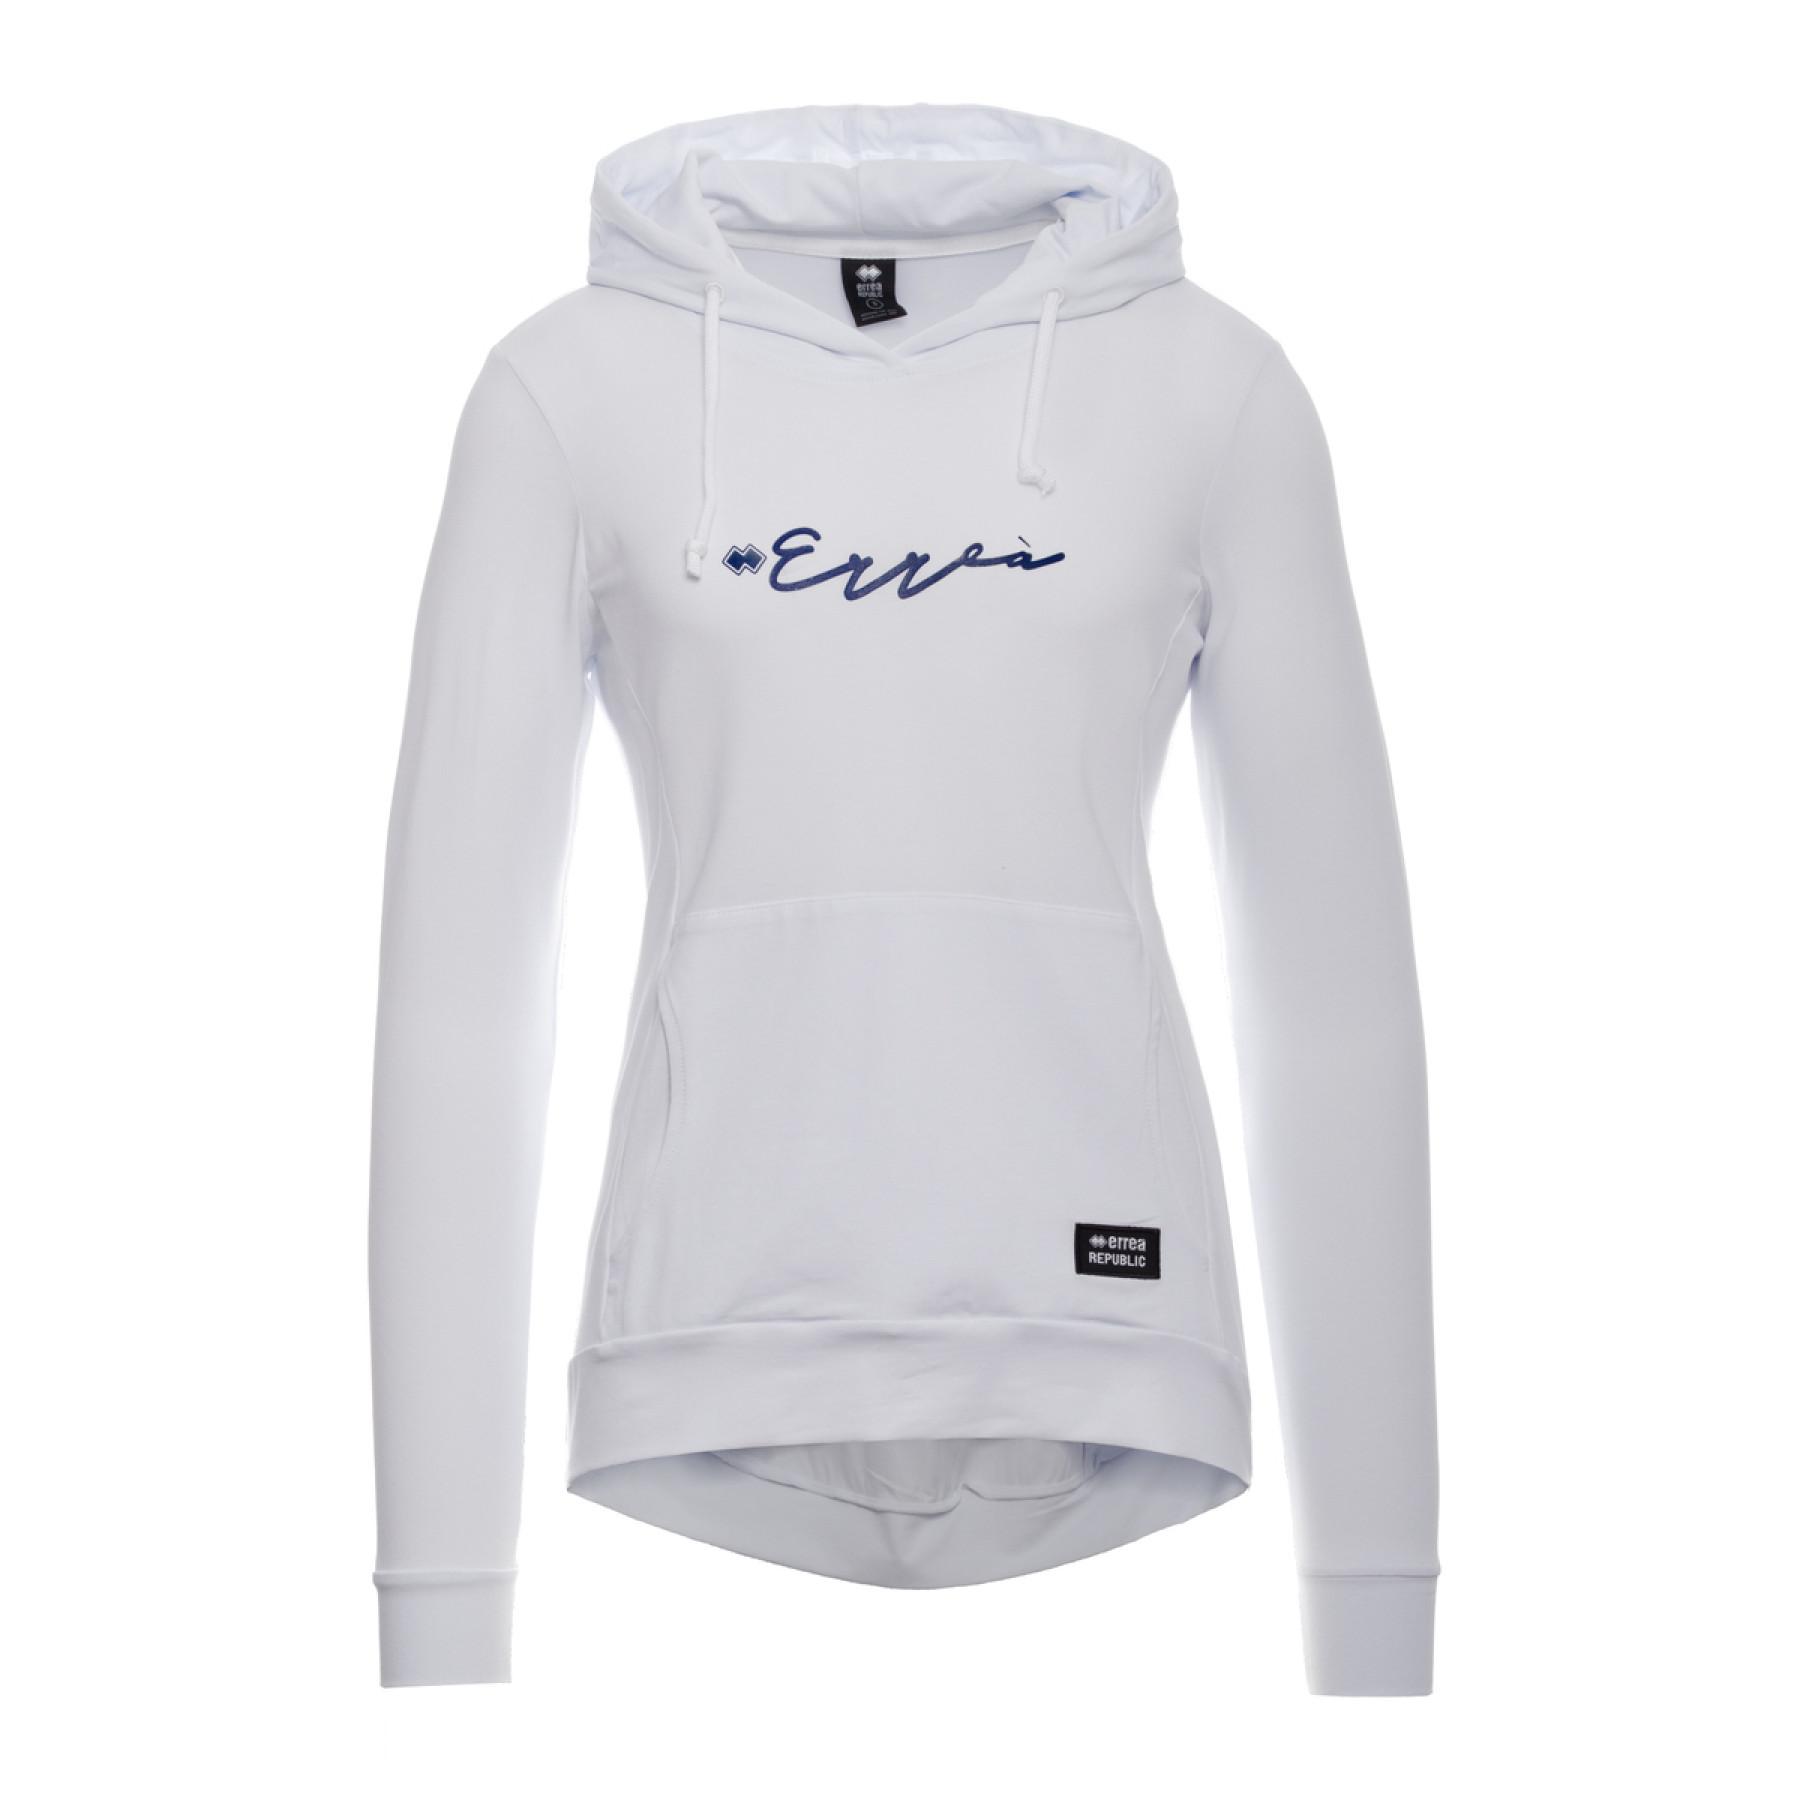 Damen-Sweatshirt Errea essential calligrafic logo